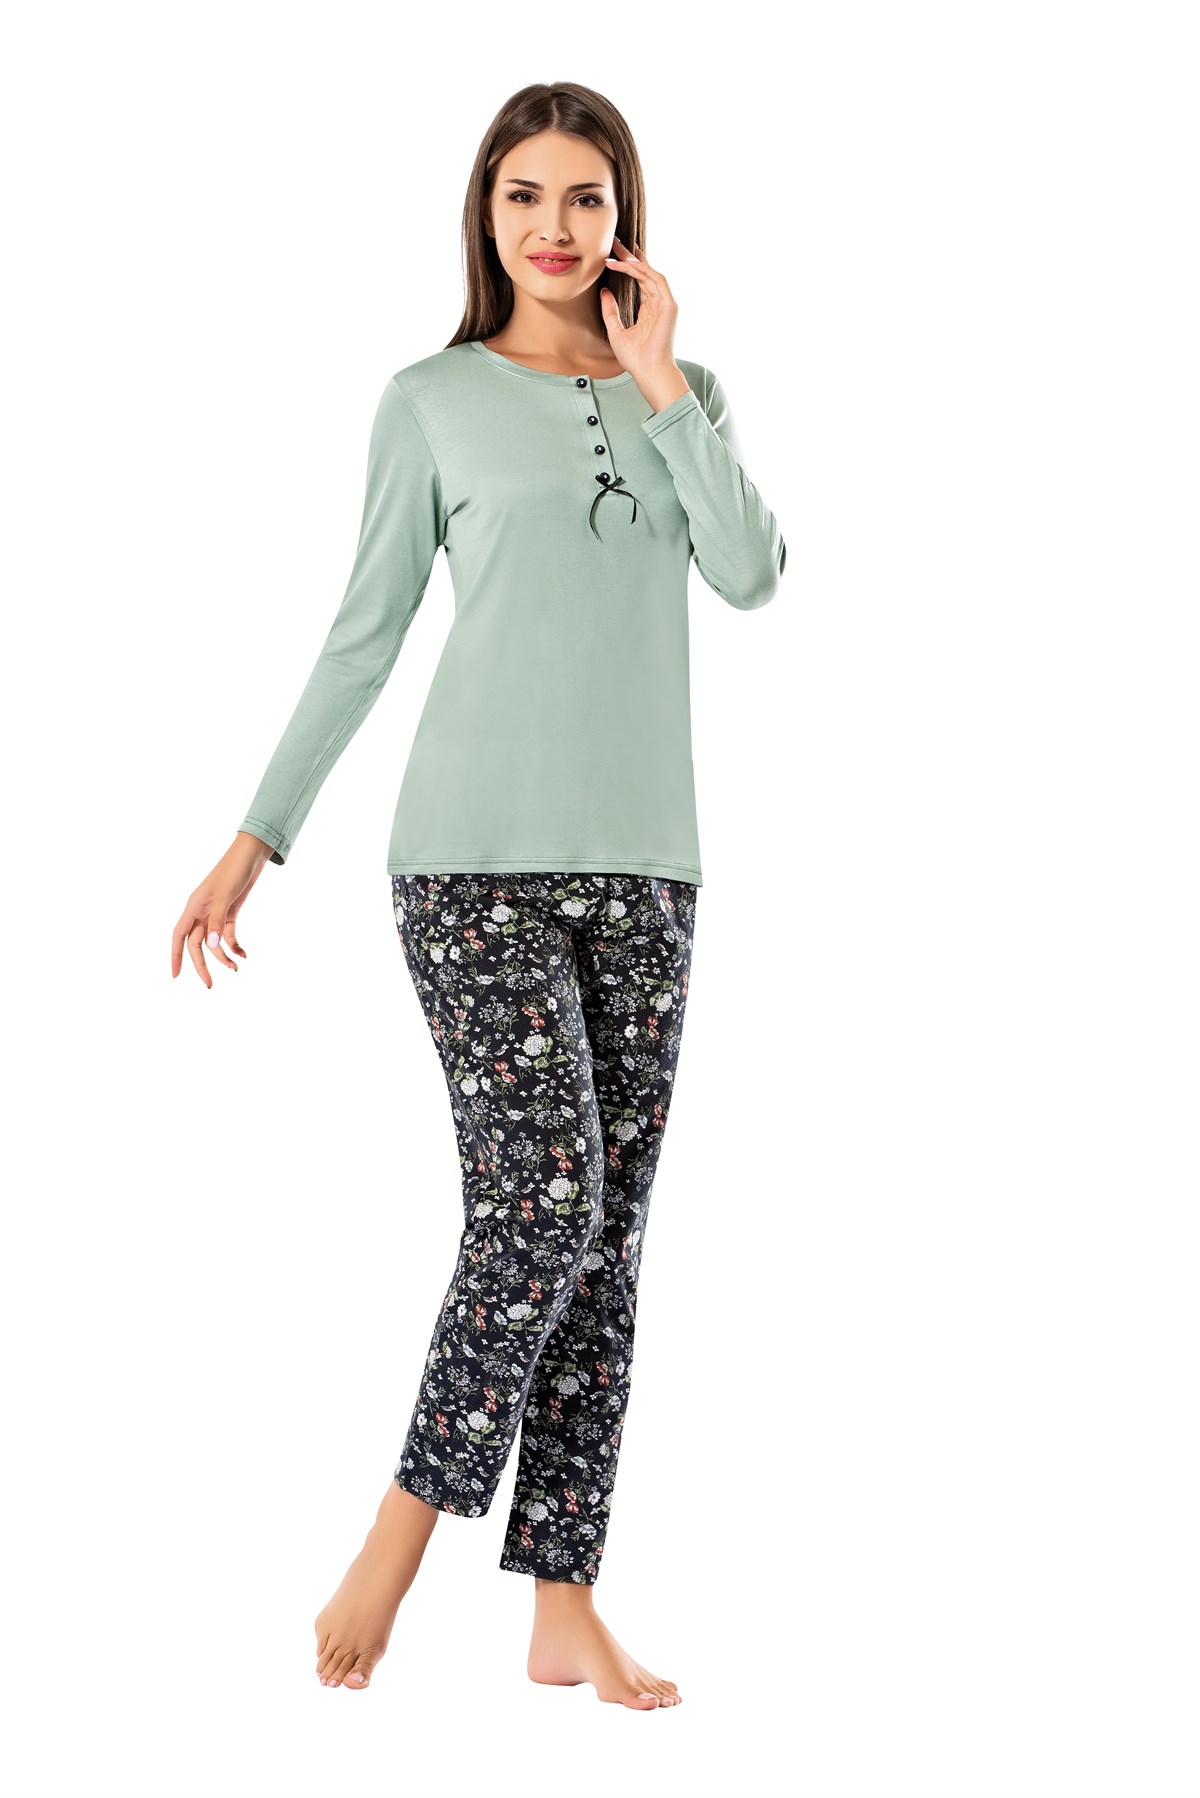 Erdem Bayan Viskon Kışlık Pijama Takımı: Erdem İç Giyim